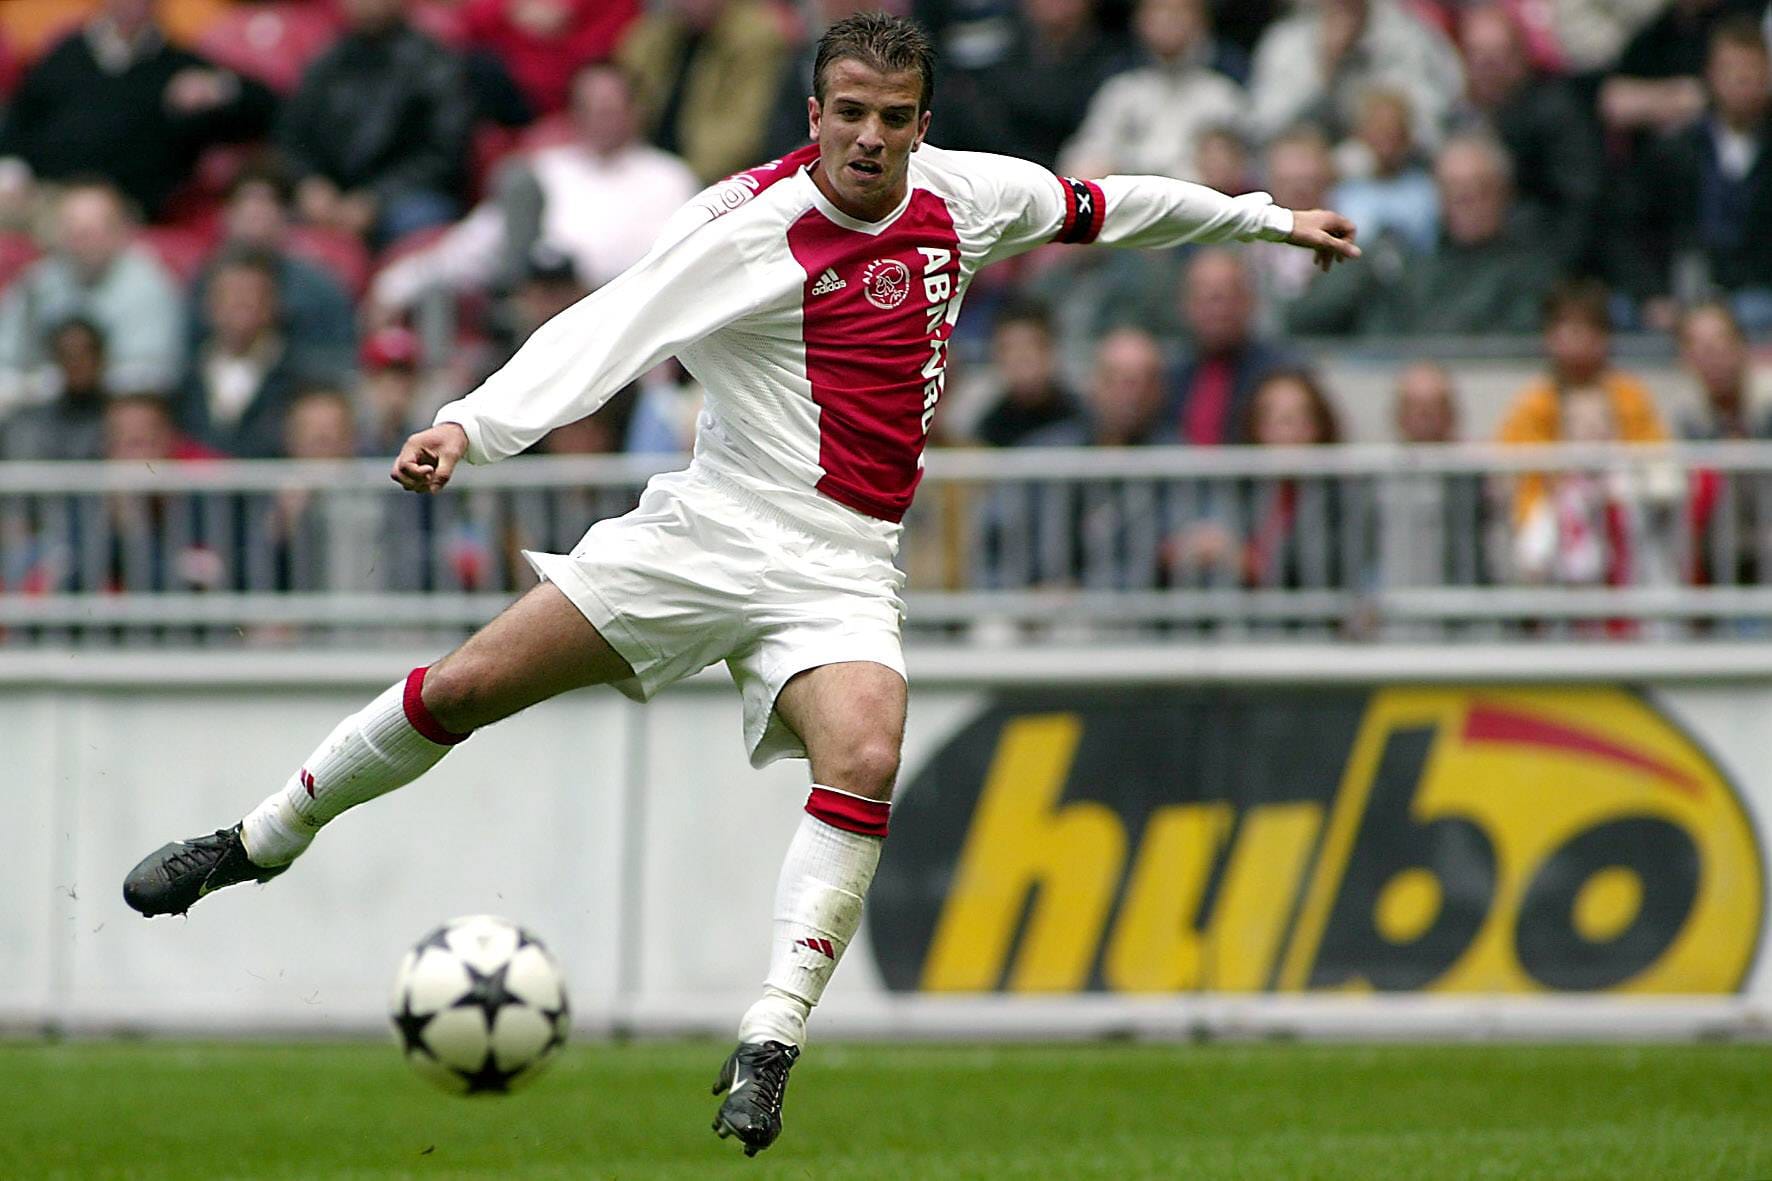 Mit ihm fing alles an: Rafael van der Vaart wurde 2003 mit dem ersten "Golden Boy Award" ausgezeichnet. Damals spielte er noch bei Ajax Amsterdam, wurde später beim Hamburger SV, Real Madrid und Tottenham Hotspur zum Torjäger. Seinen größten Erfolg feierte er 2010 im Trikot der Niederlande: Den zweiten Platz zwei bei der WM.